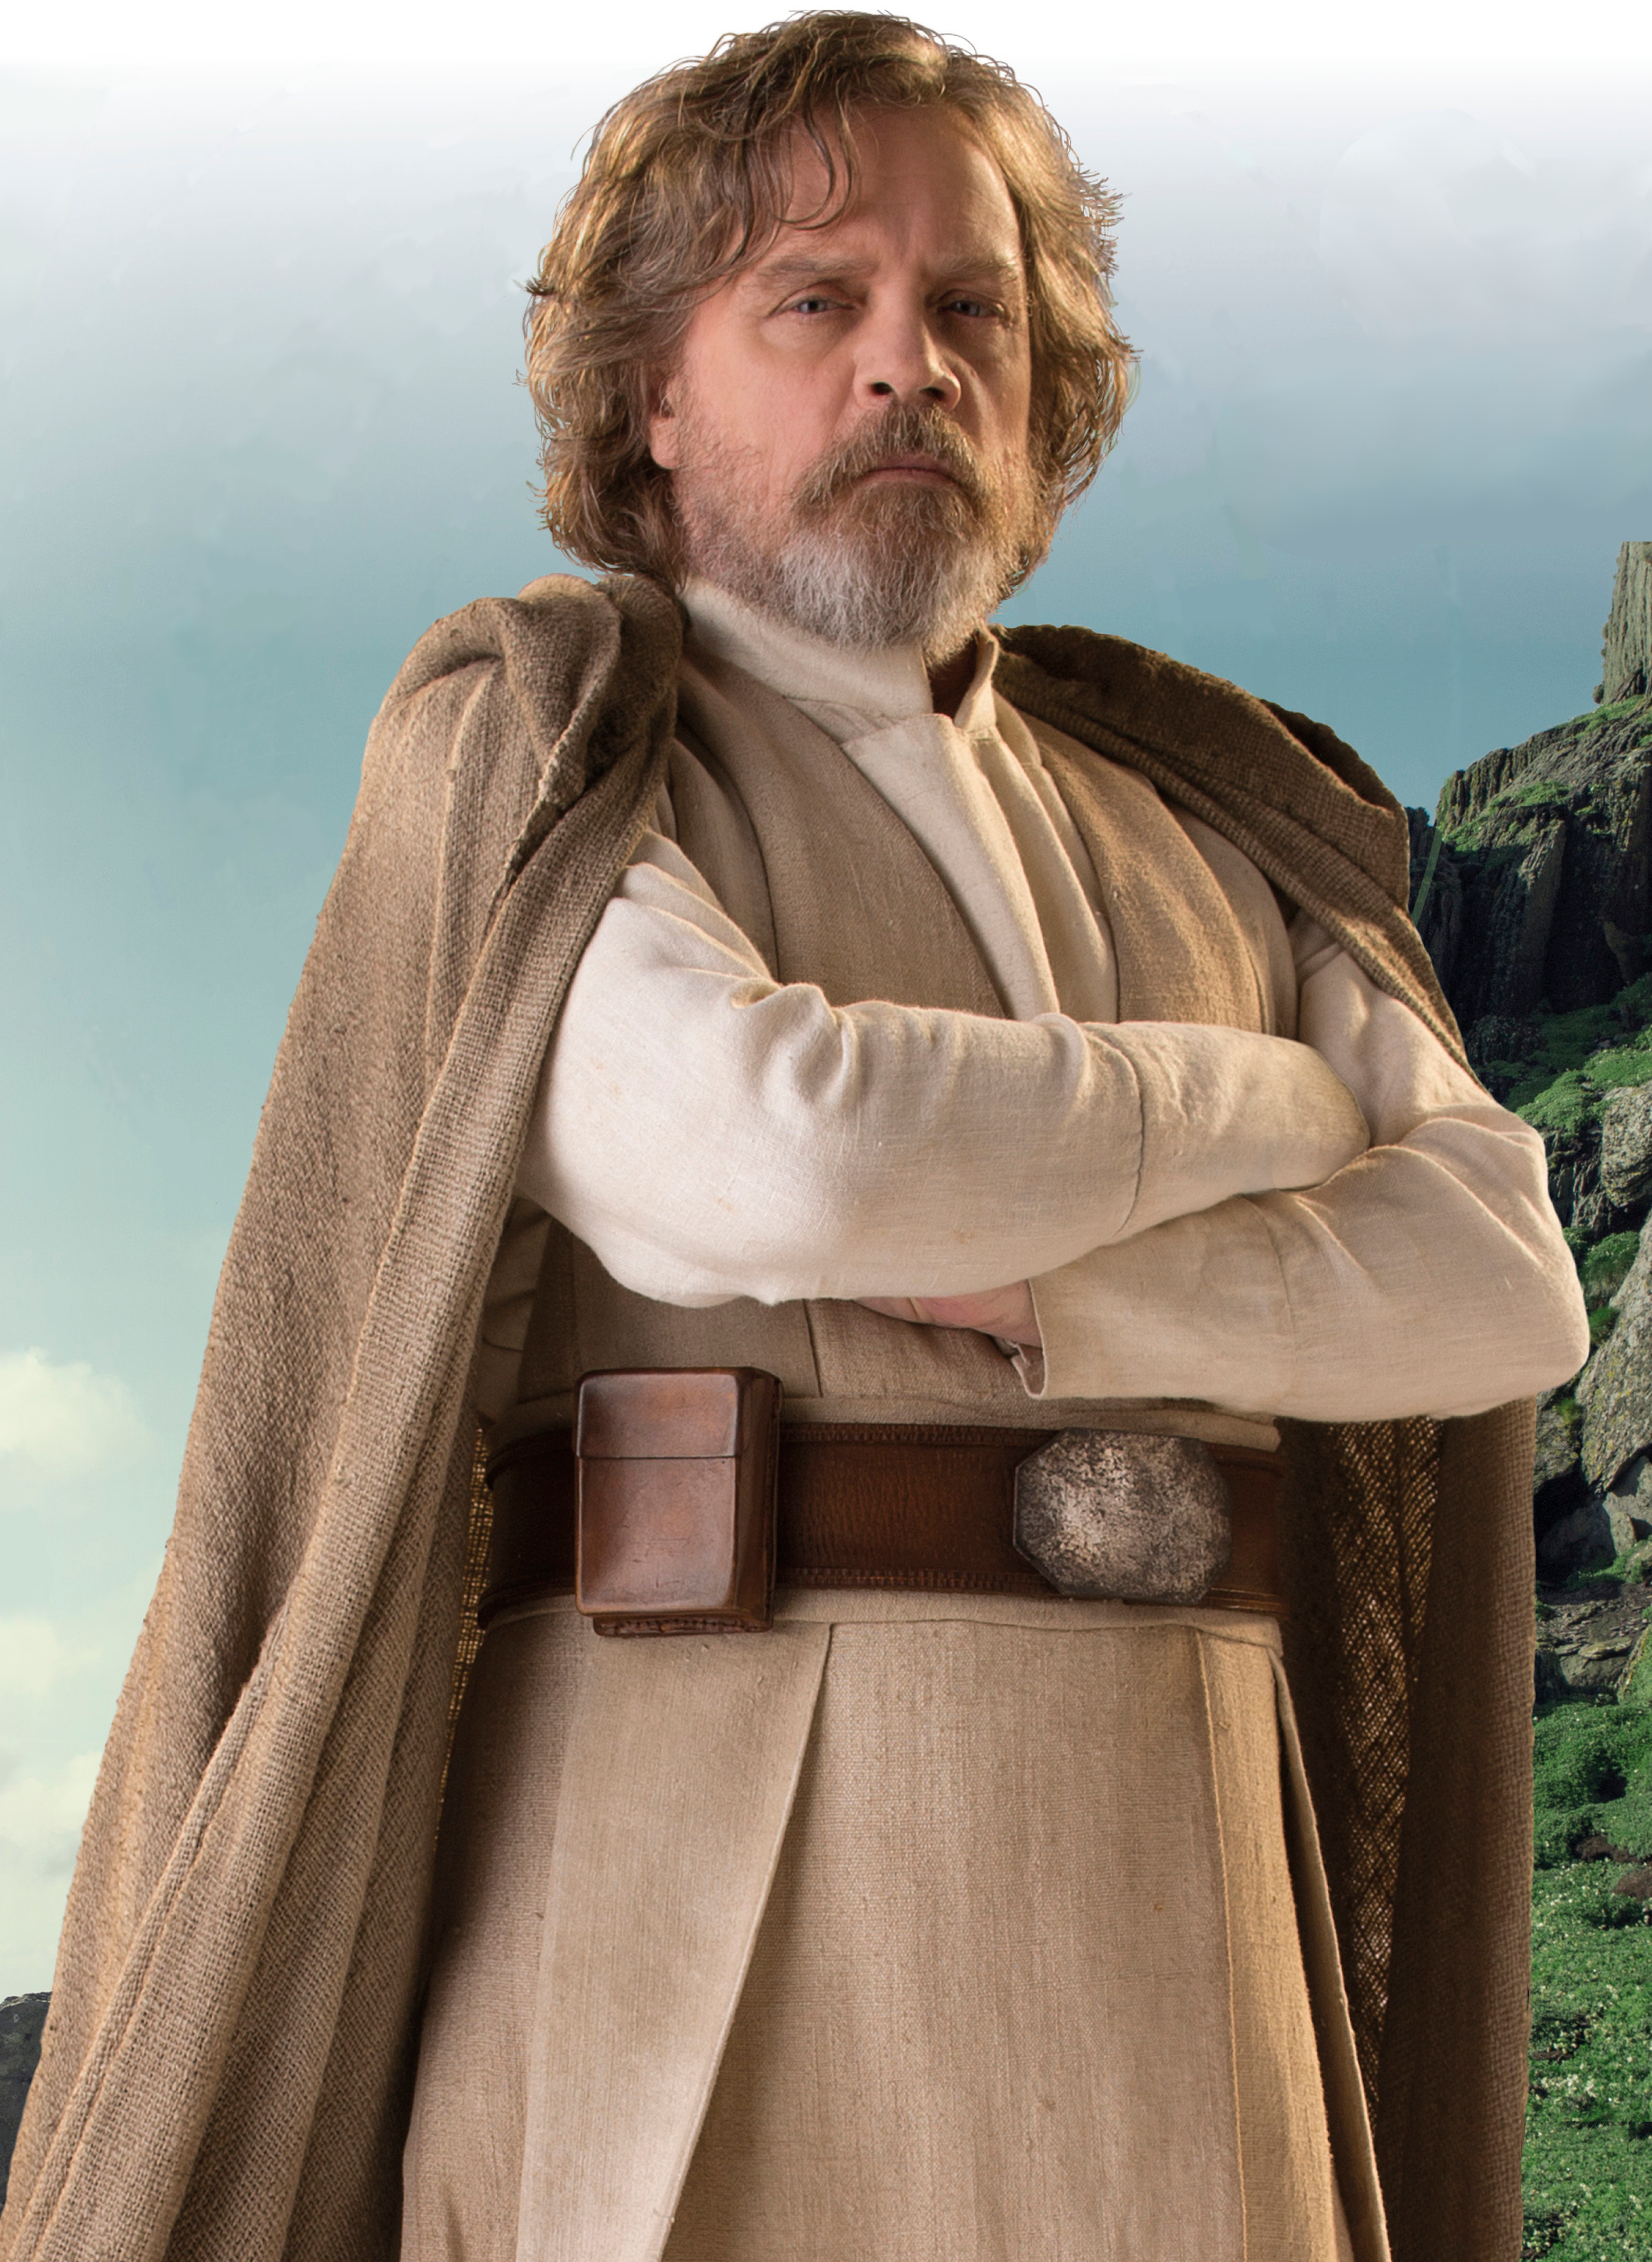 Who is Luke Skywalker?